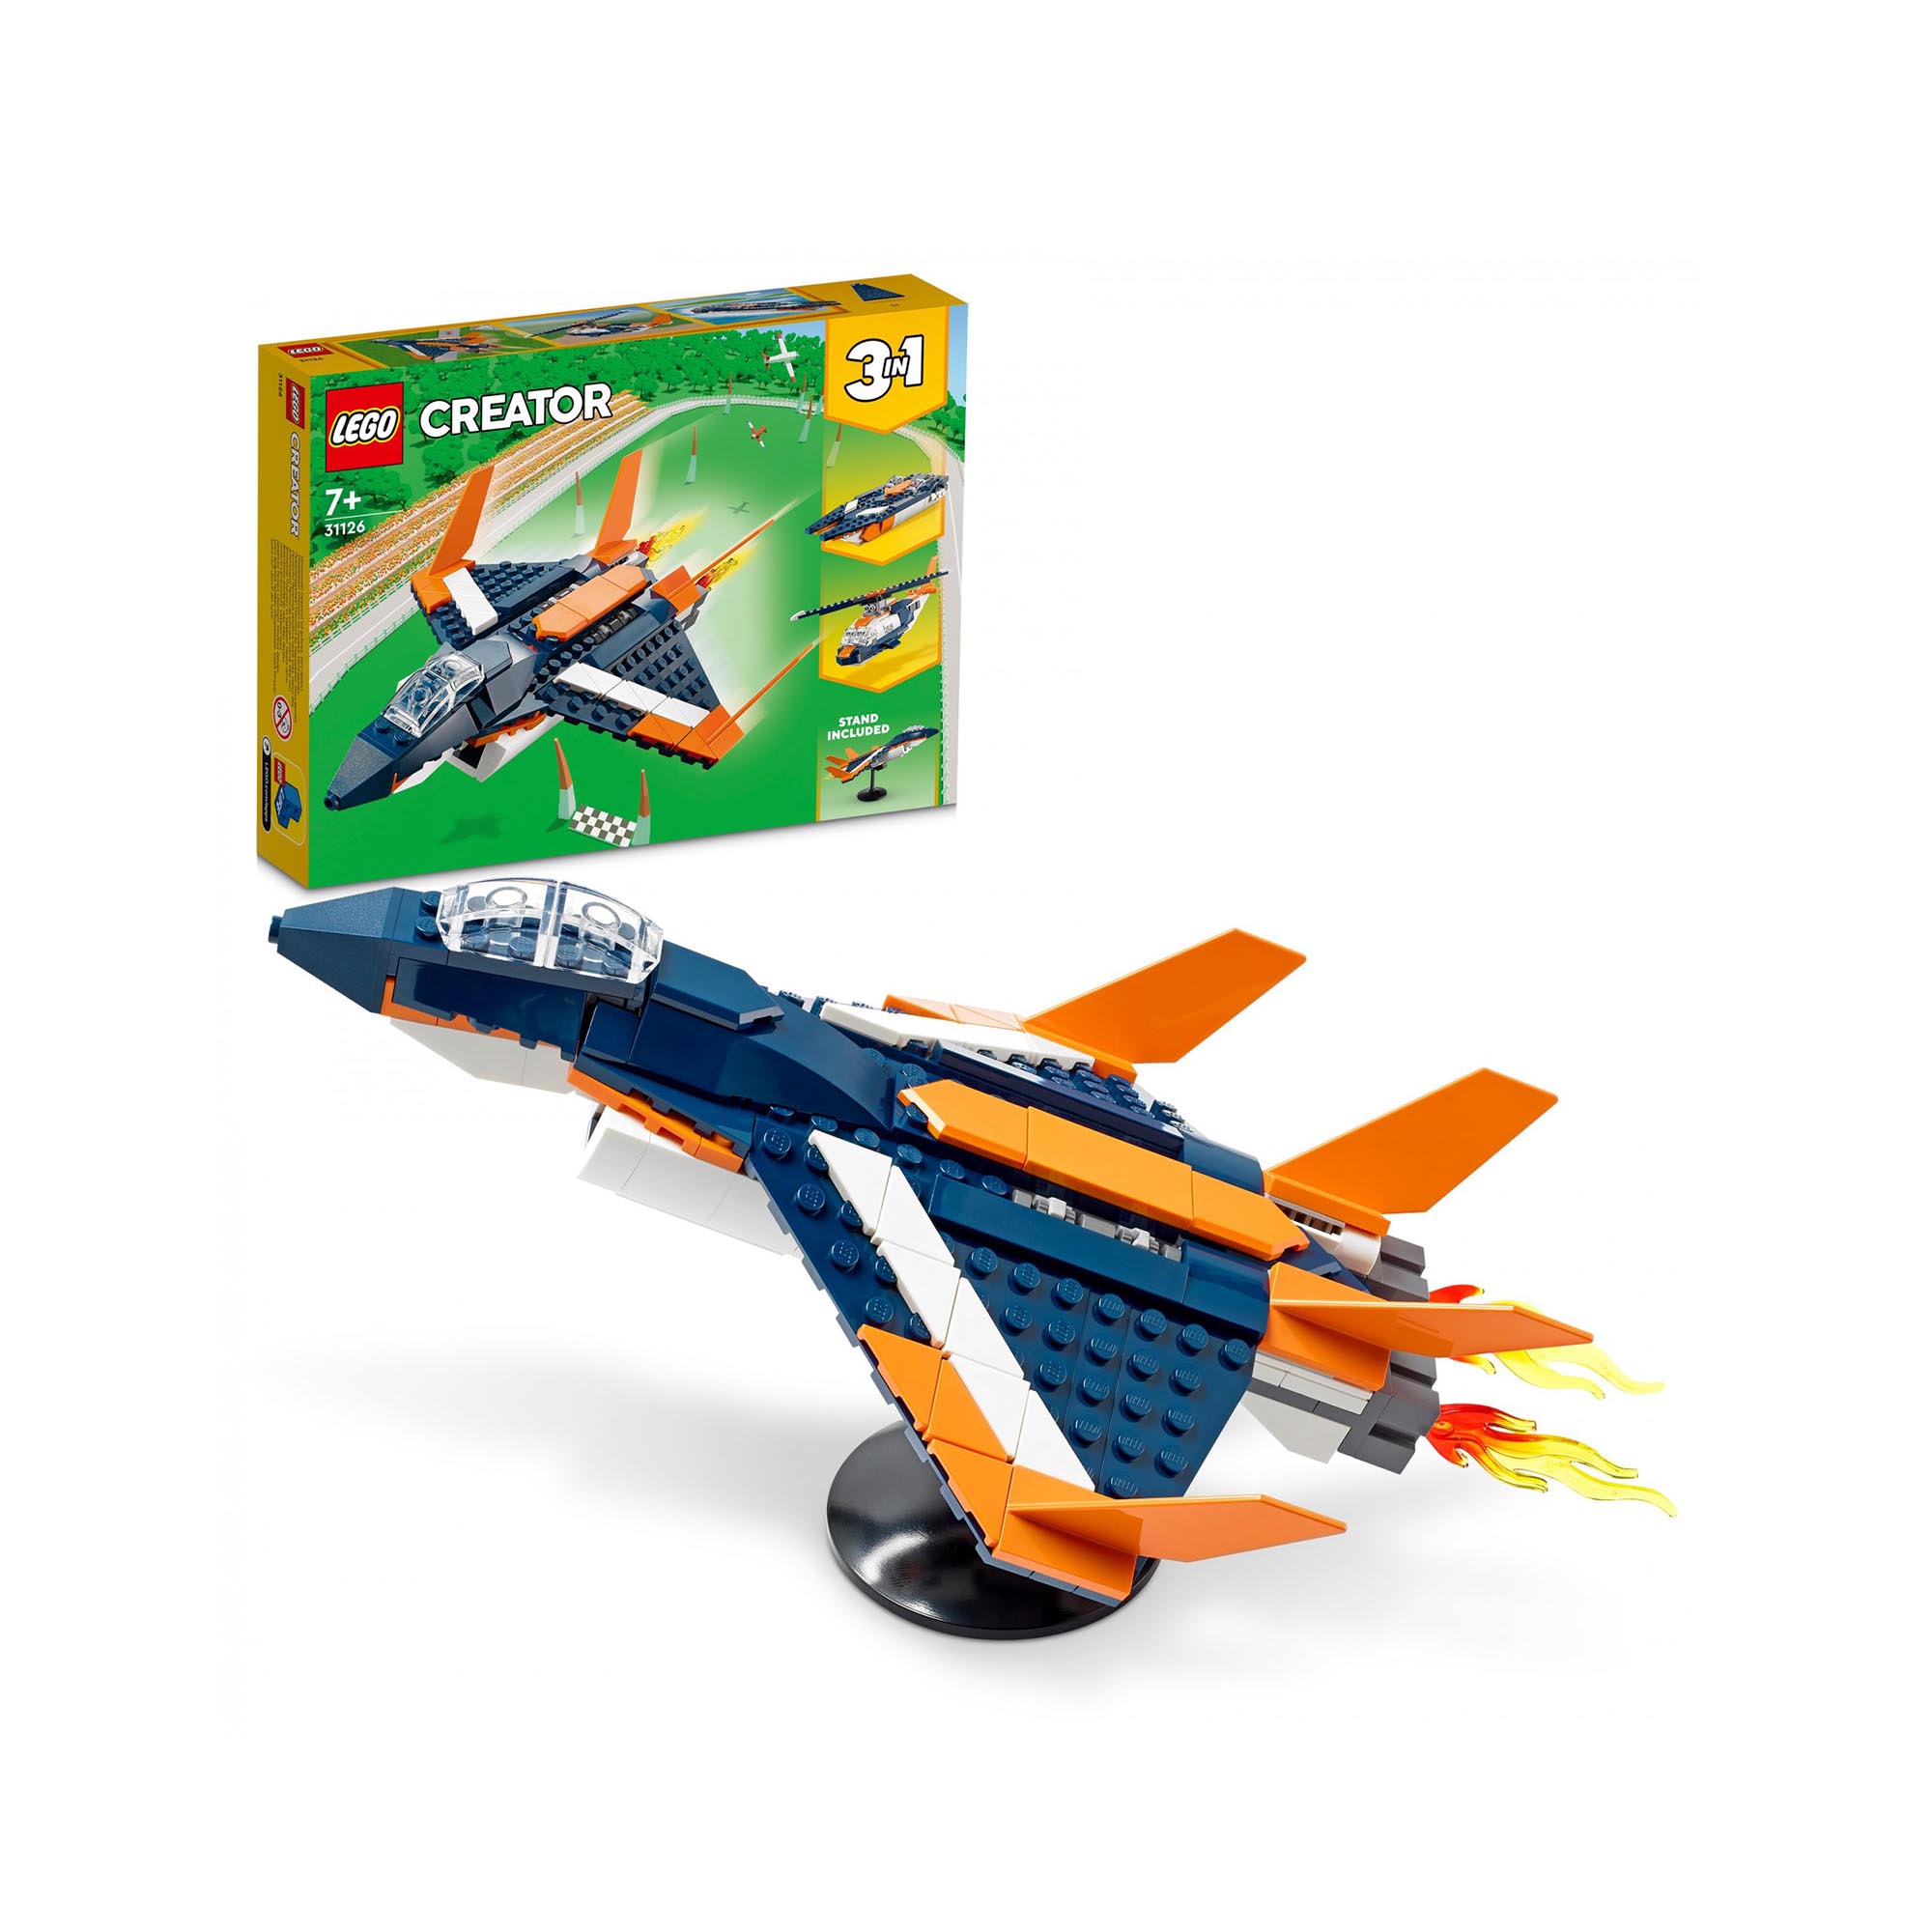 LEGO 31126 Creator 3in1 Jet Supersonico, Giocattoli Creativi di Costruzione per  31126, , large